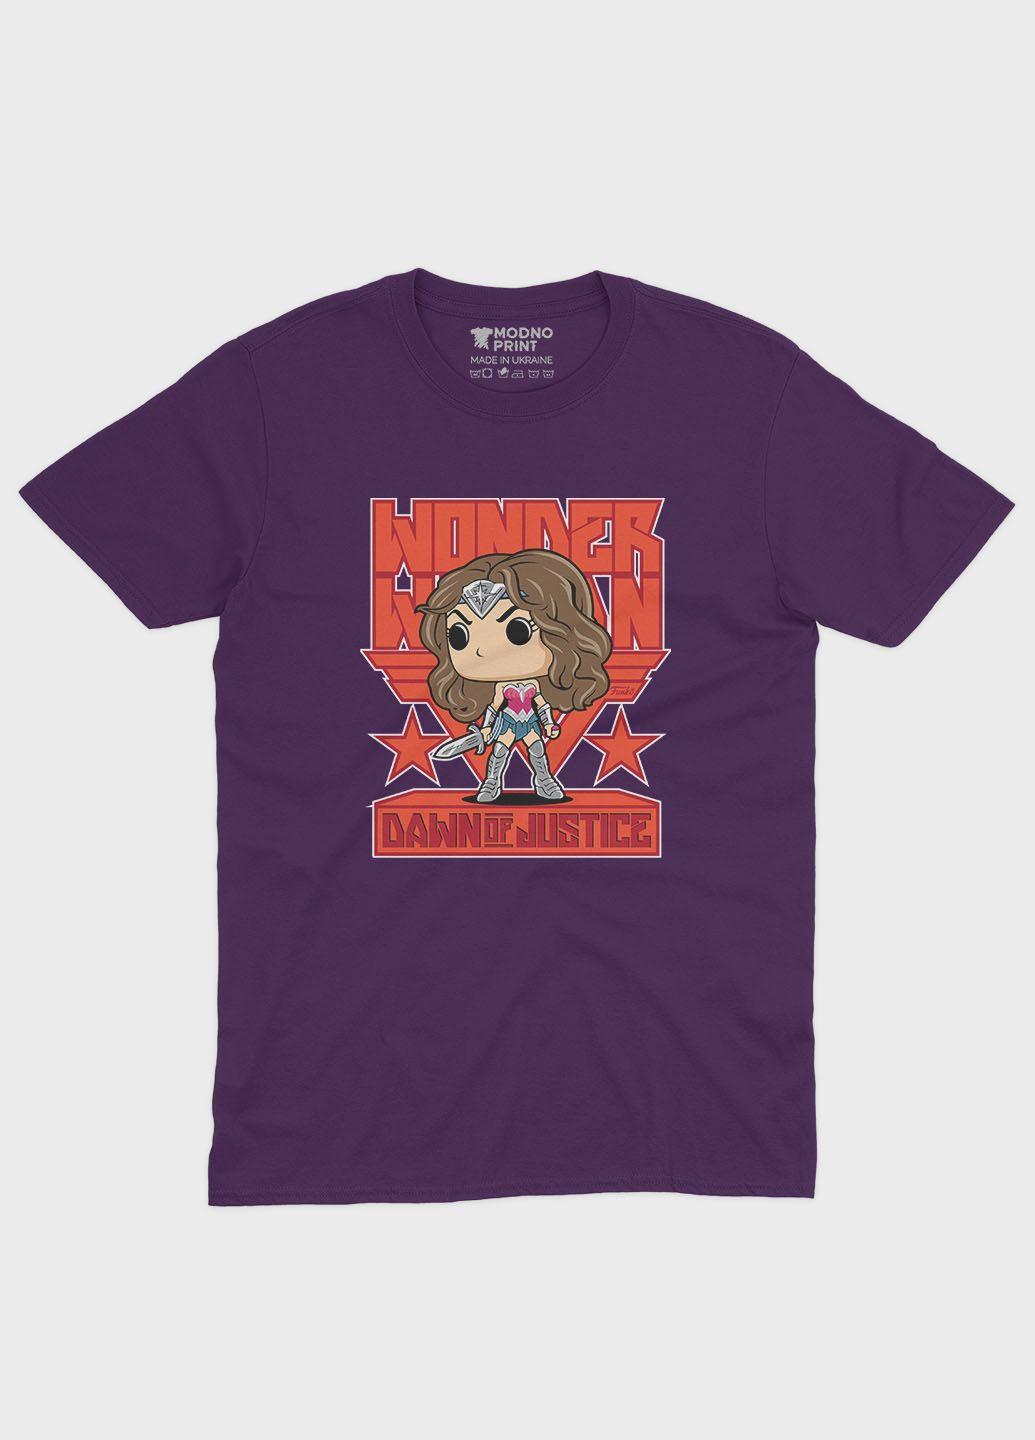 Фіолетова демісезонна футболка для хлопчика з принтом супергероя - диво-жінка (ts001-1-dby-006-006-002-b) Modno